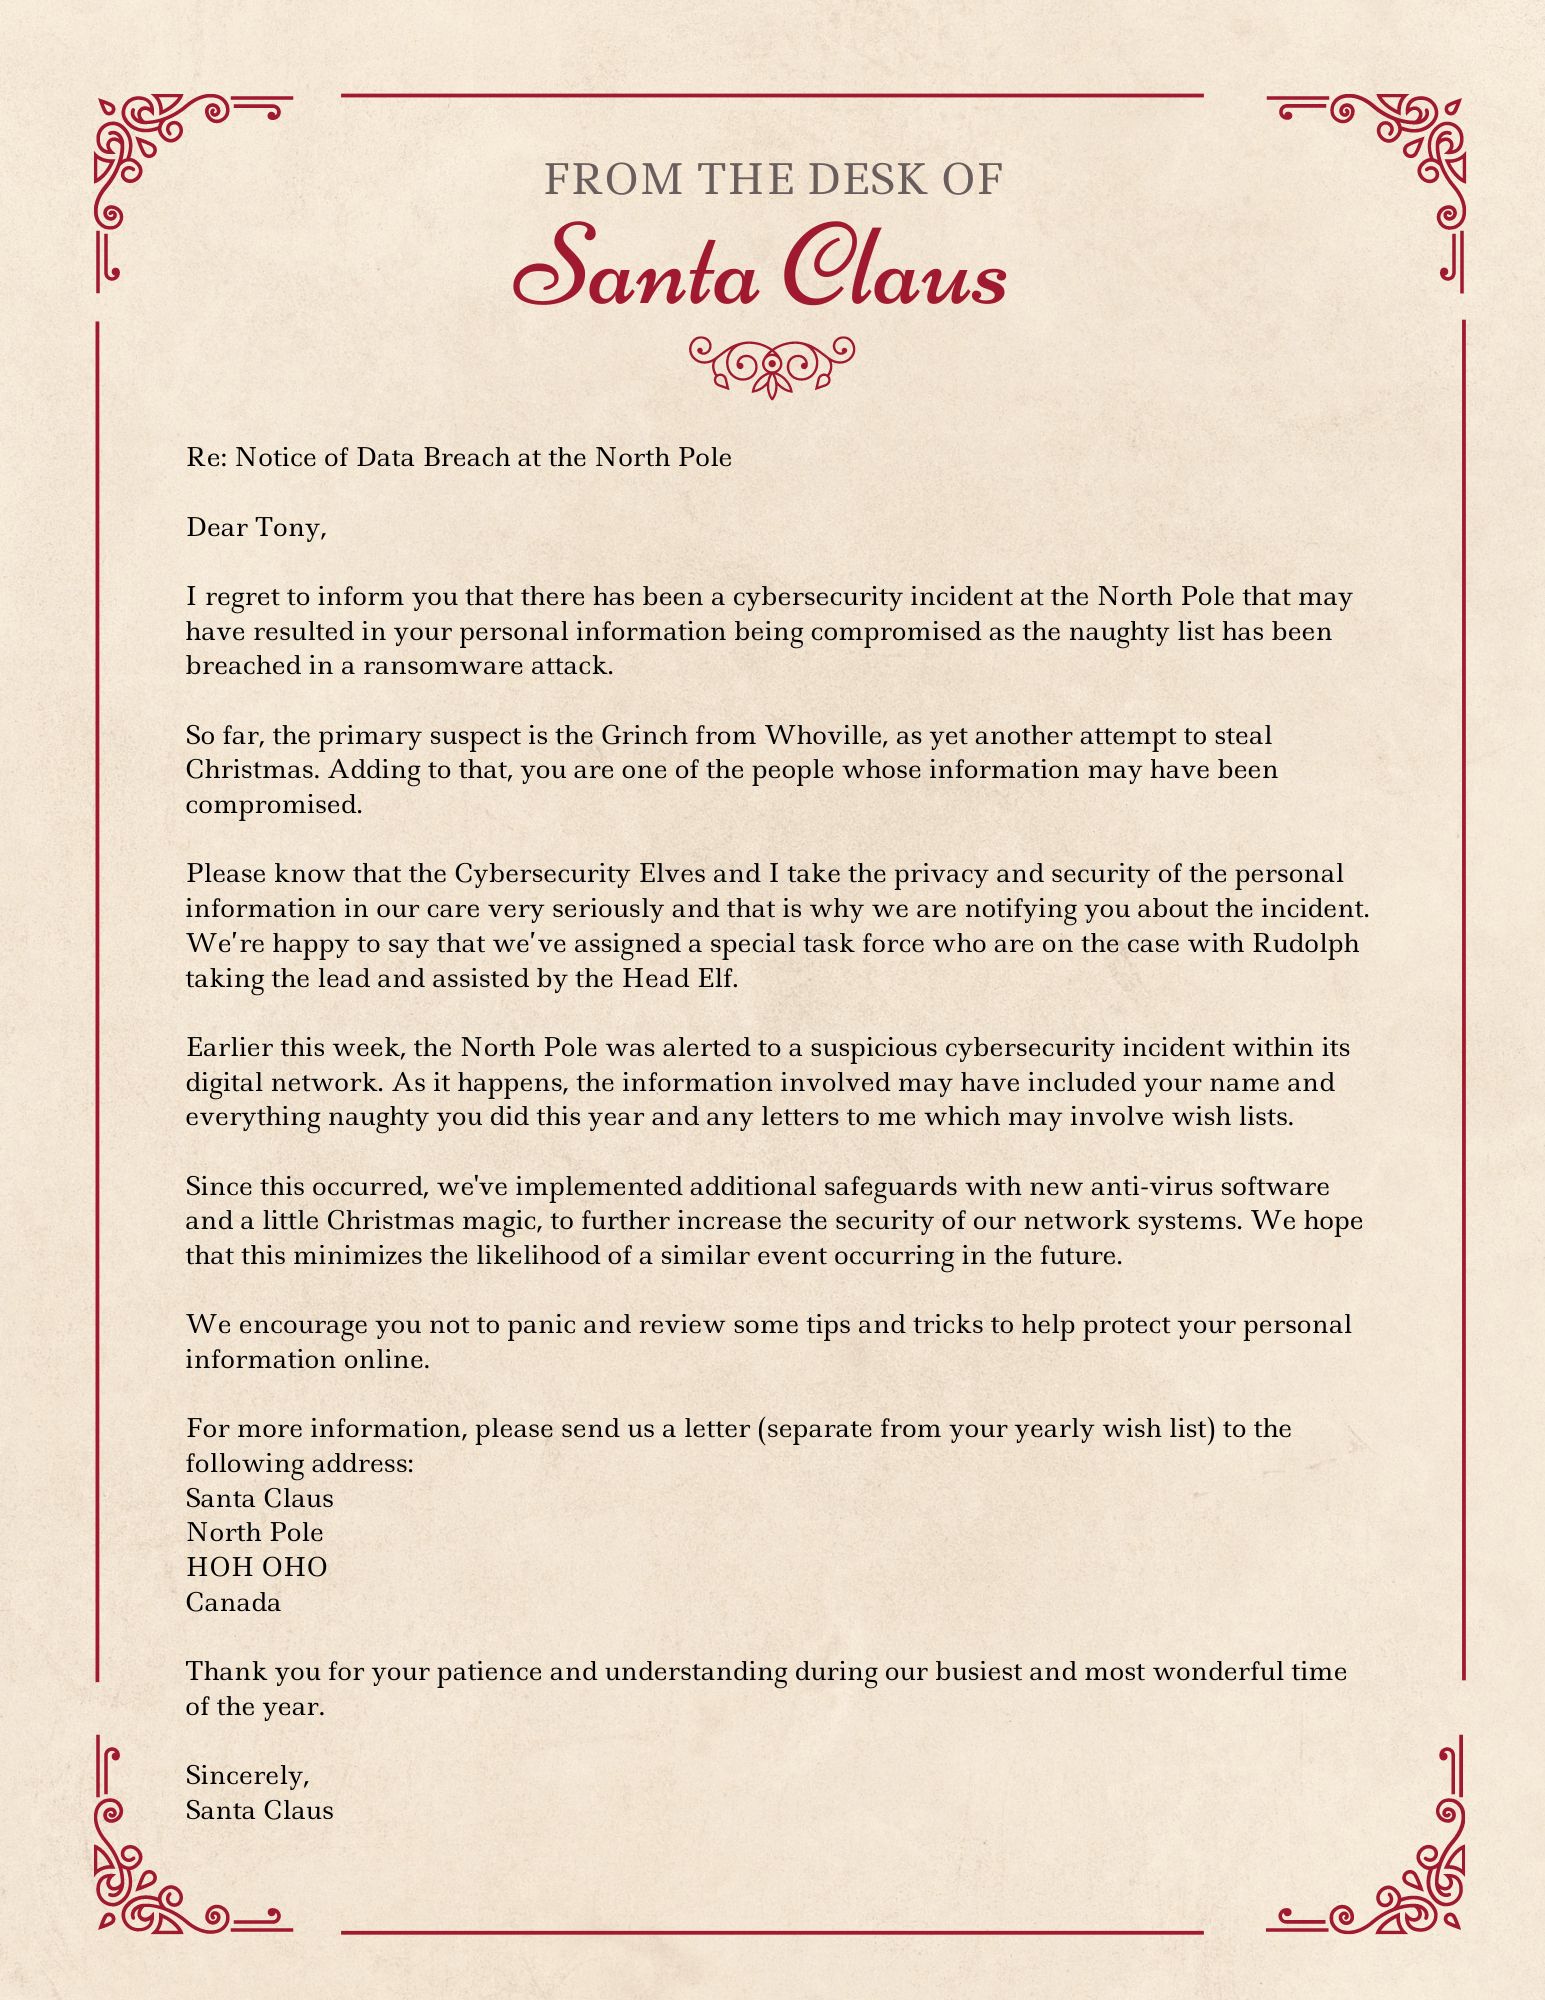 Dear Santa, am I on the naughty list?” (an honest reply from Santa himself)